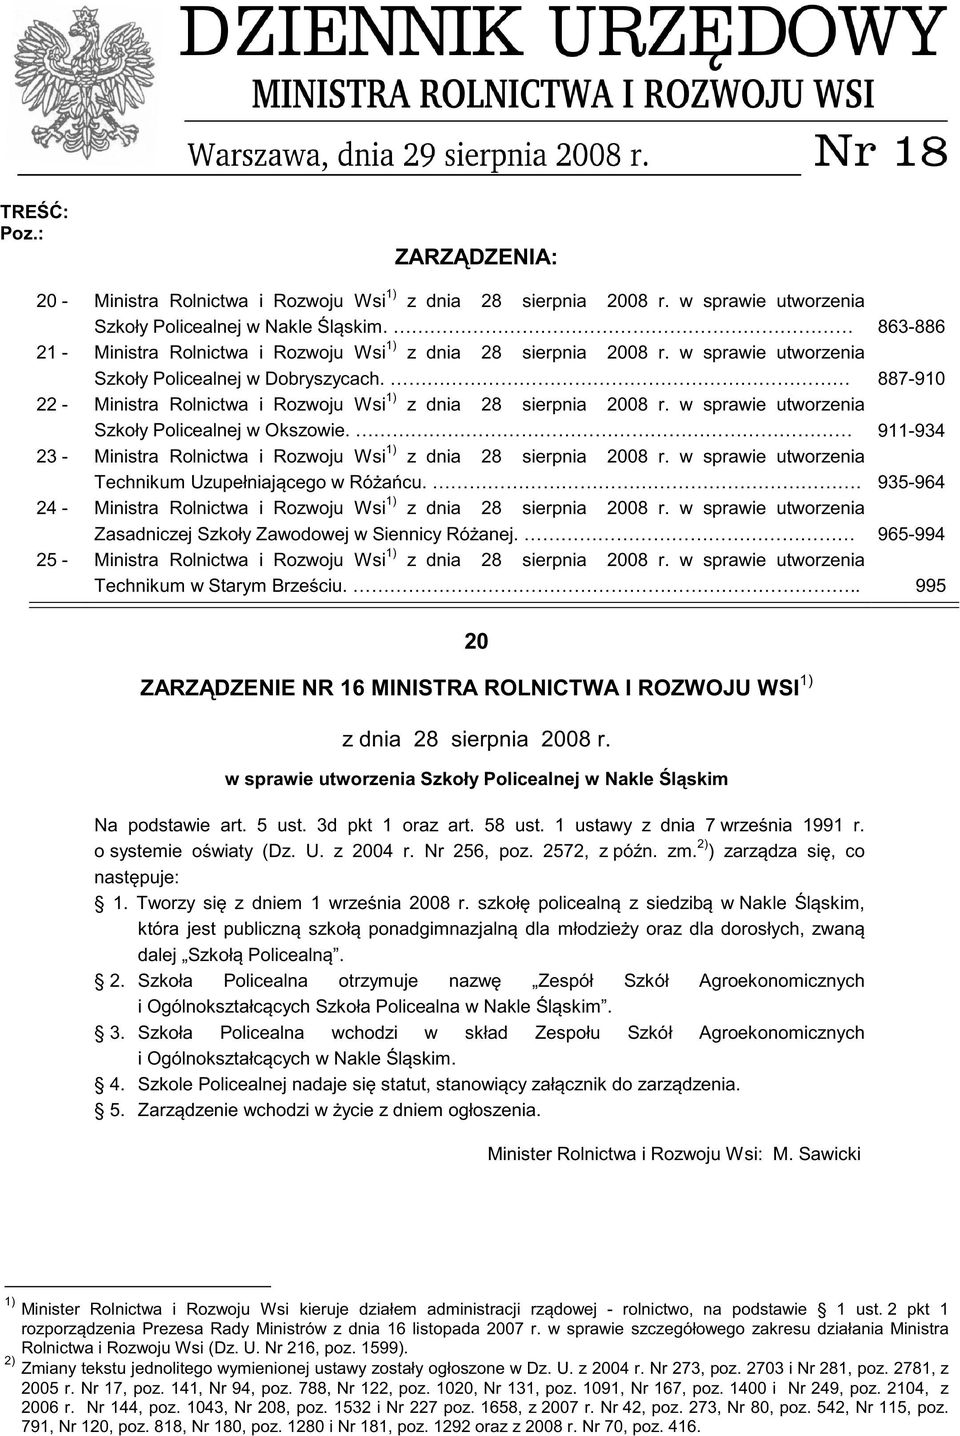 887-910 22 - Ministra Rolnictwa i Rozwoju Wsi 1) z dnia 28 sierpnia 2008 r. w sprawie utworzenia Szkoły Policealnej w Okszowie.